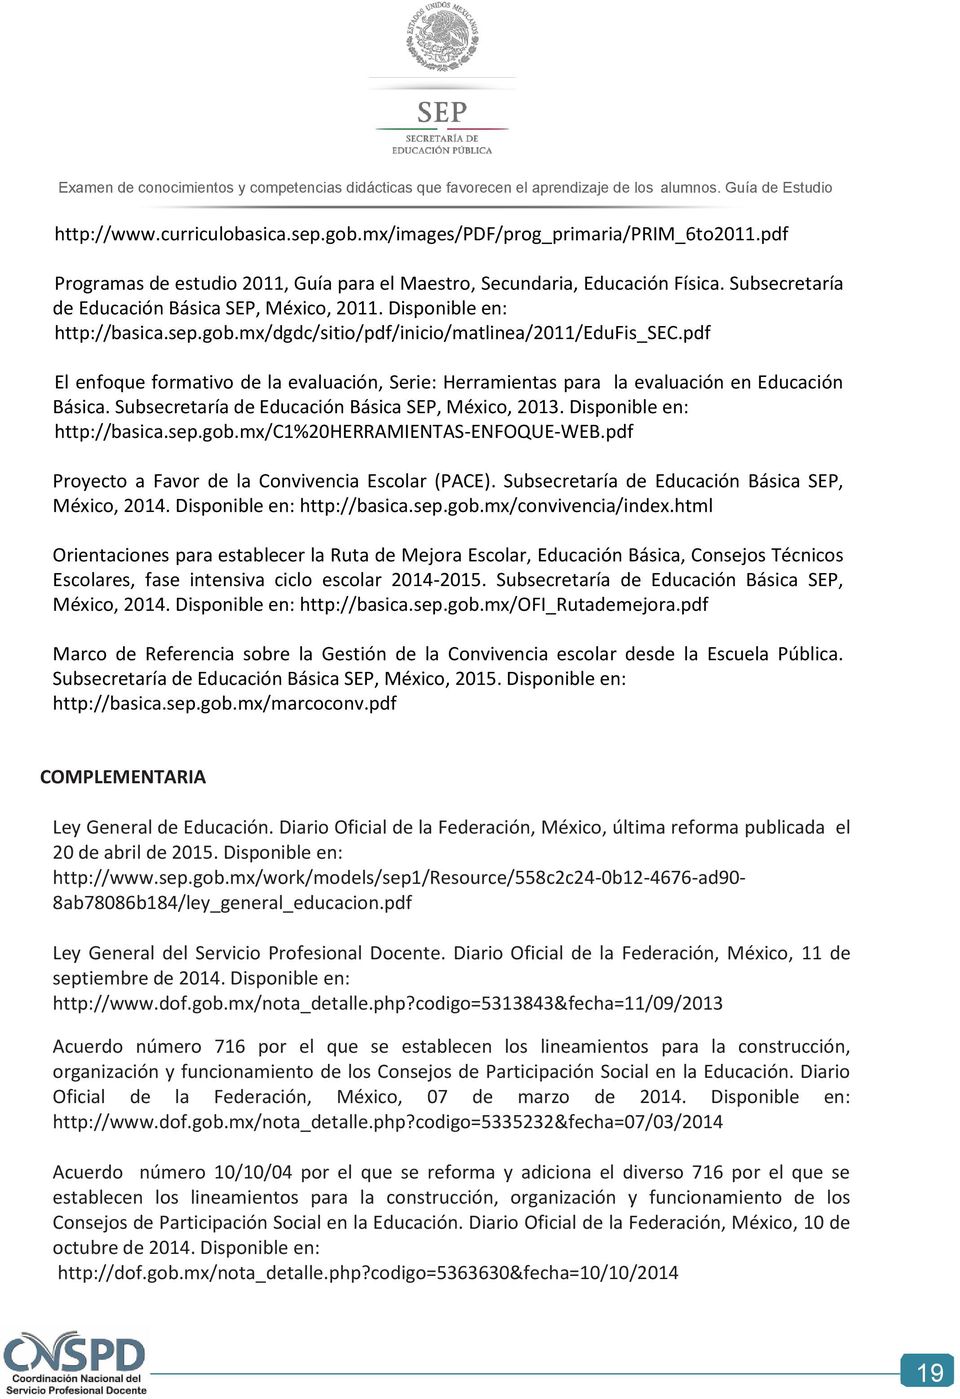 pdf El enfoque formativo de la evaluación, Serie: Herramientas para la evaluación en Educación Básica. Subsecretaría de Educación Básica SEP, México, 2013. Disponible en: http://basica.sep.gob.